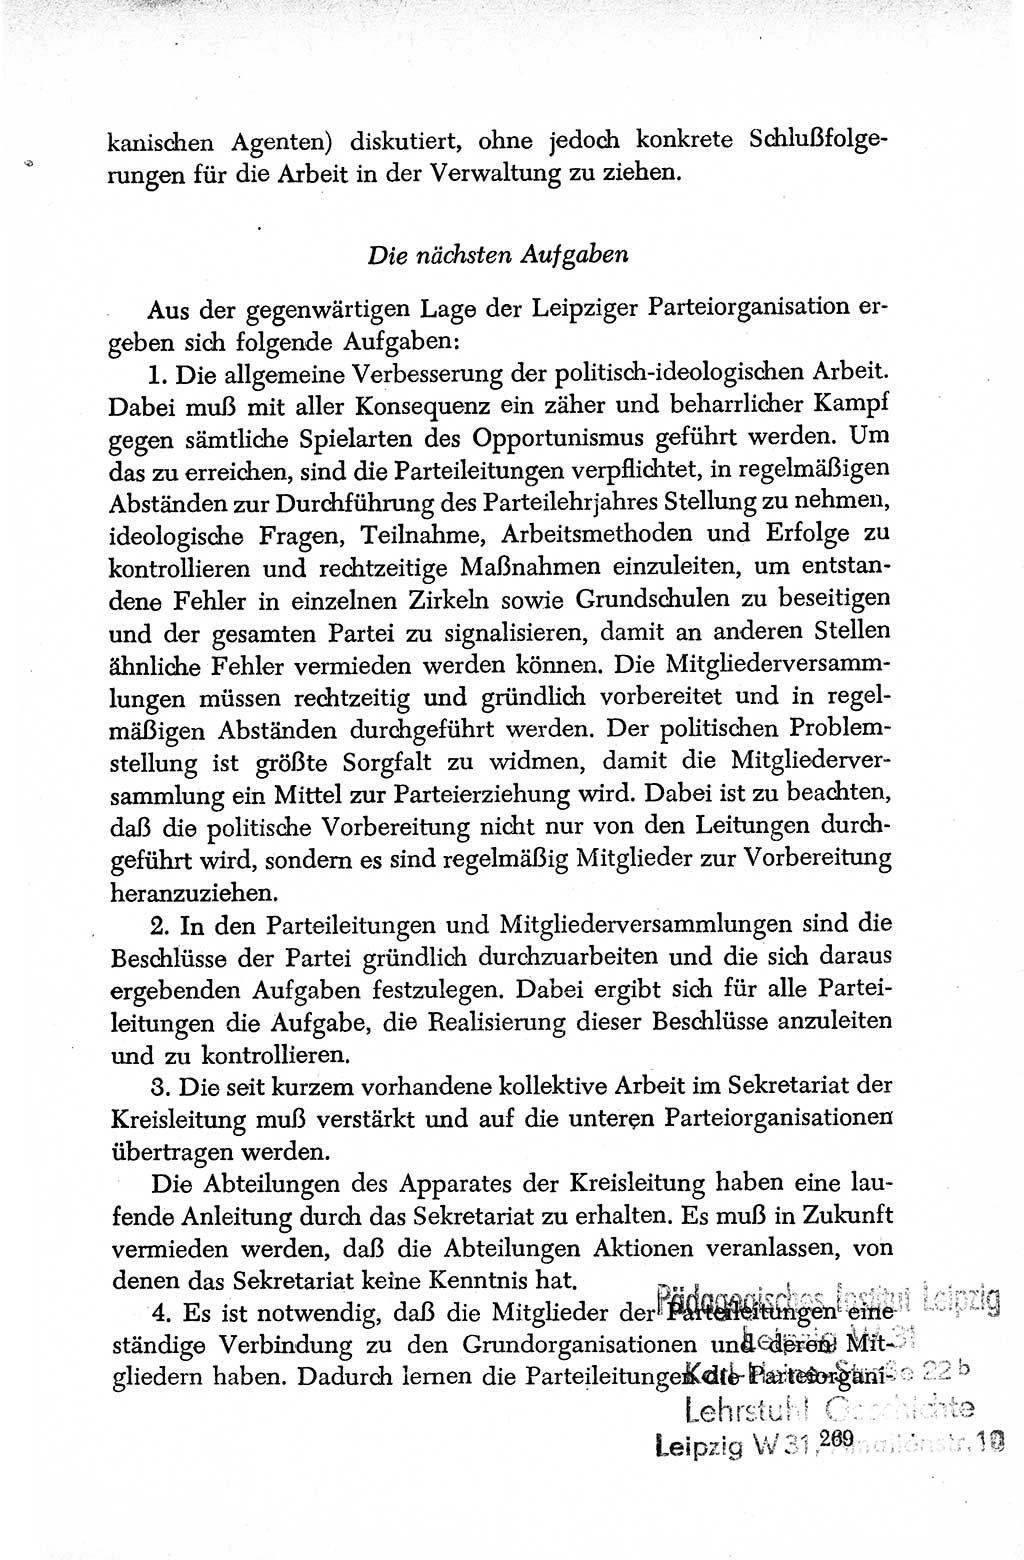 Dokumente der Sozialistischen Einheitspartei Deutschlands (SED) [Deutsche Demokratische Republik (DDR)] 1950-1952, Seite 269 (Dok. SED DDR 1950-1952, S. 269)